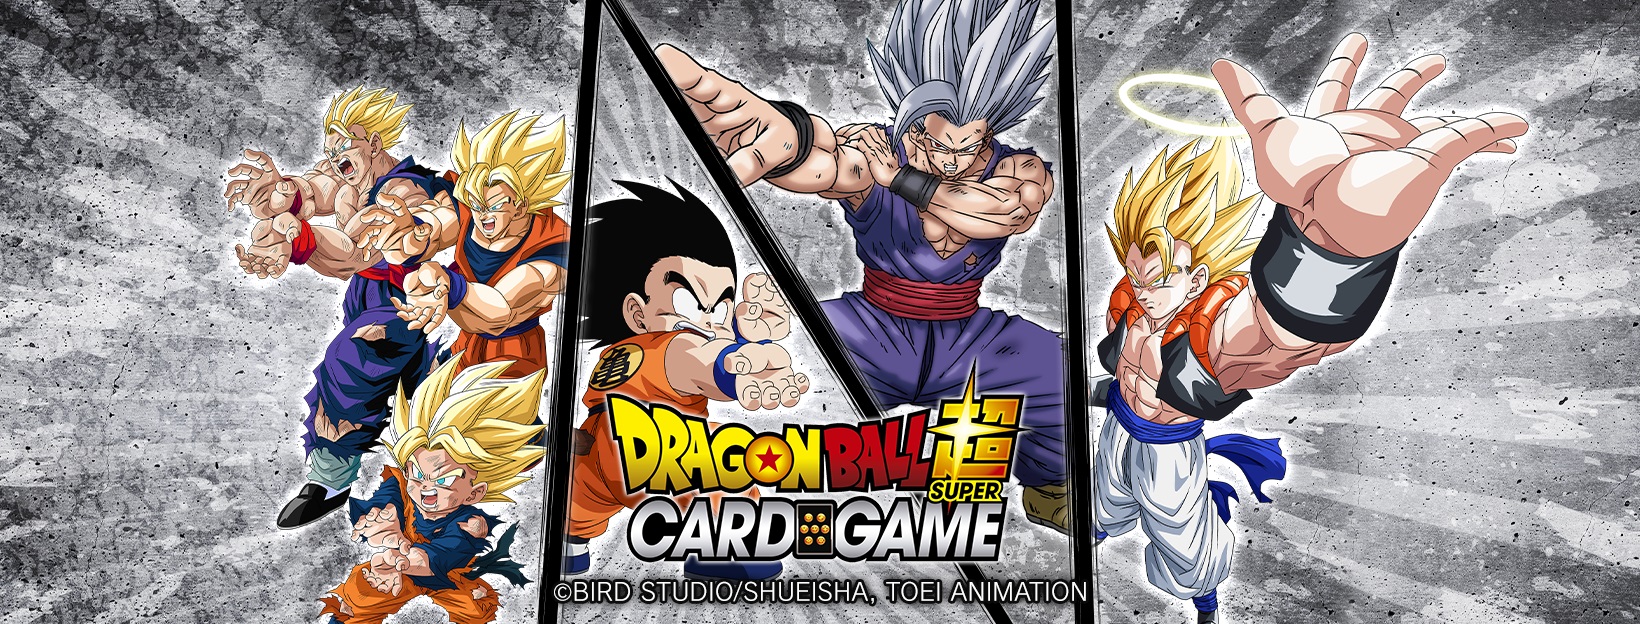  Dragon Ball Super Card Game